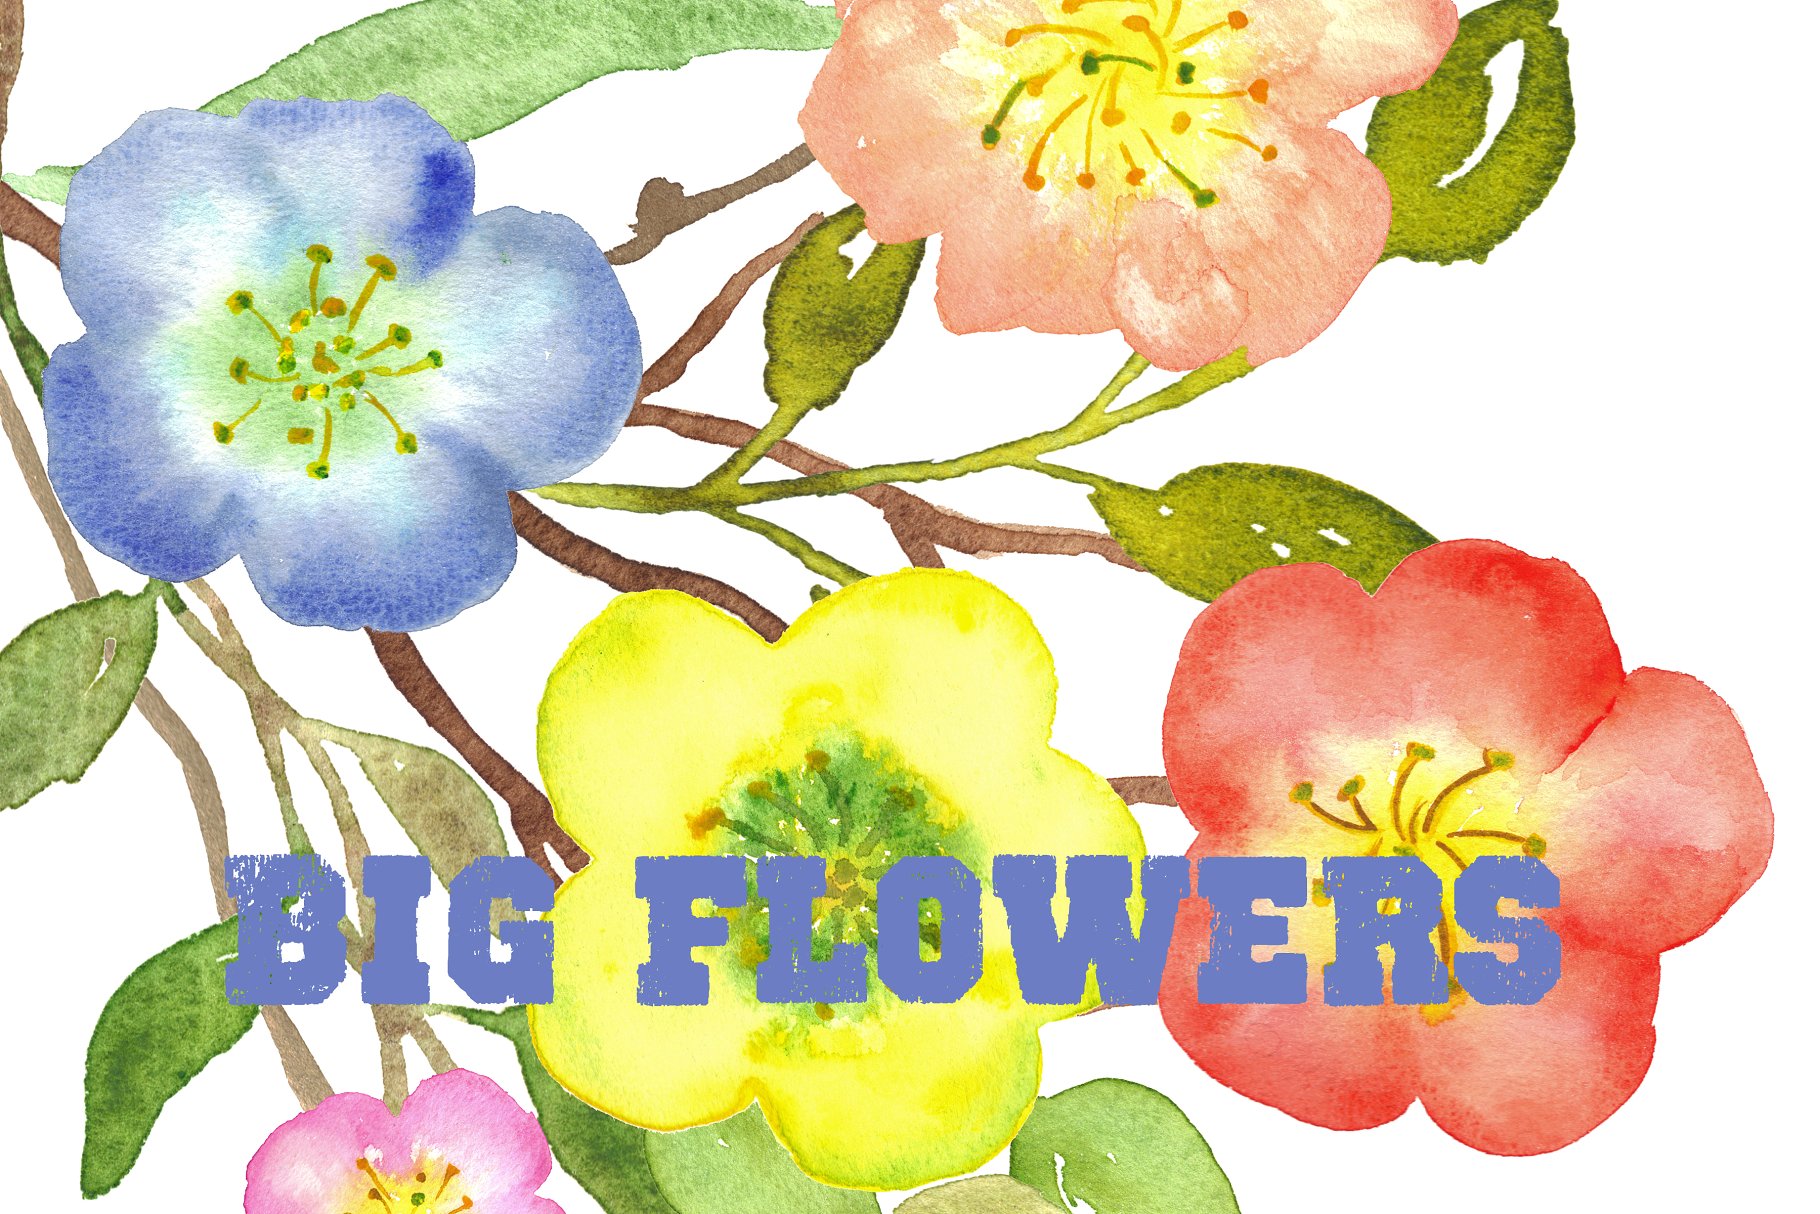 水彩手绘花卉艺术剪贴画设计素材 Big Flowers watercolor clipart插图(3)